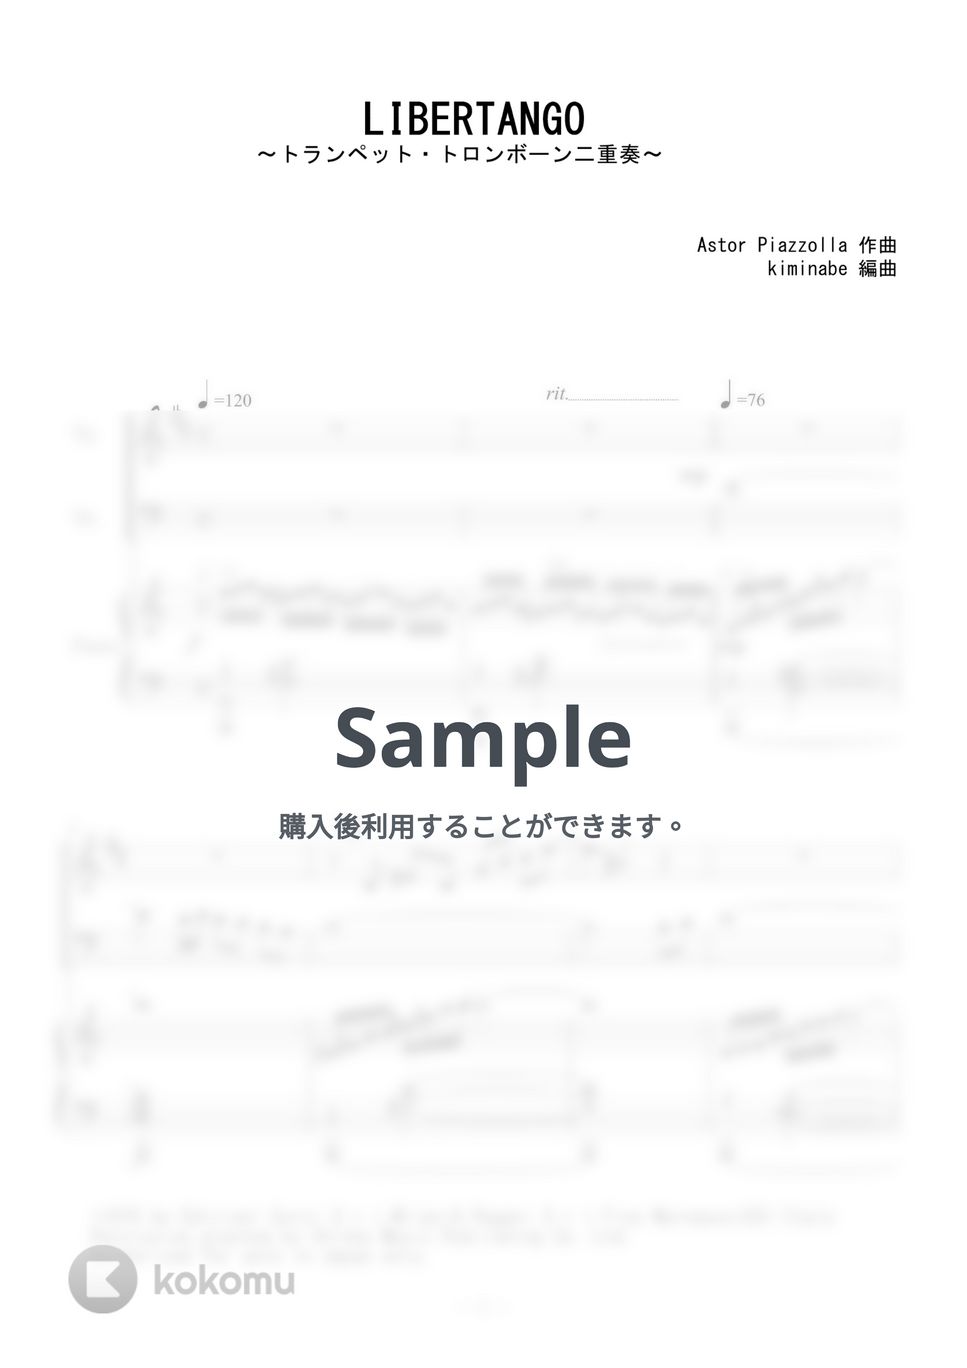 ピアソラ - LIBERTANGO (トランペット・トロンボーン二重奏) by kiminabe